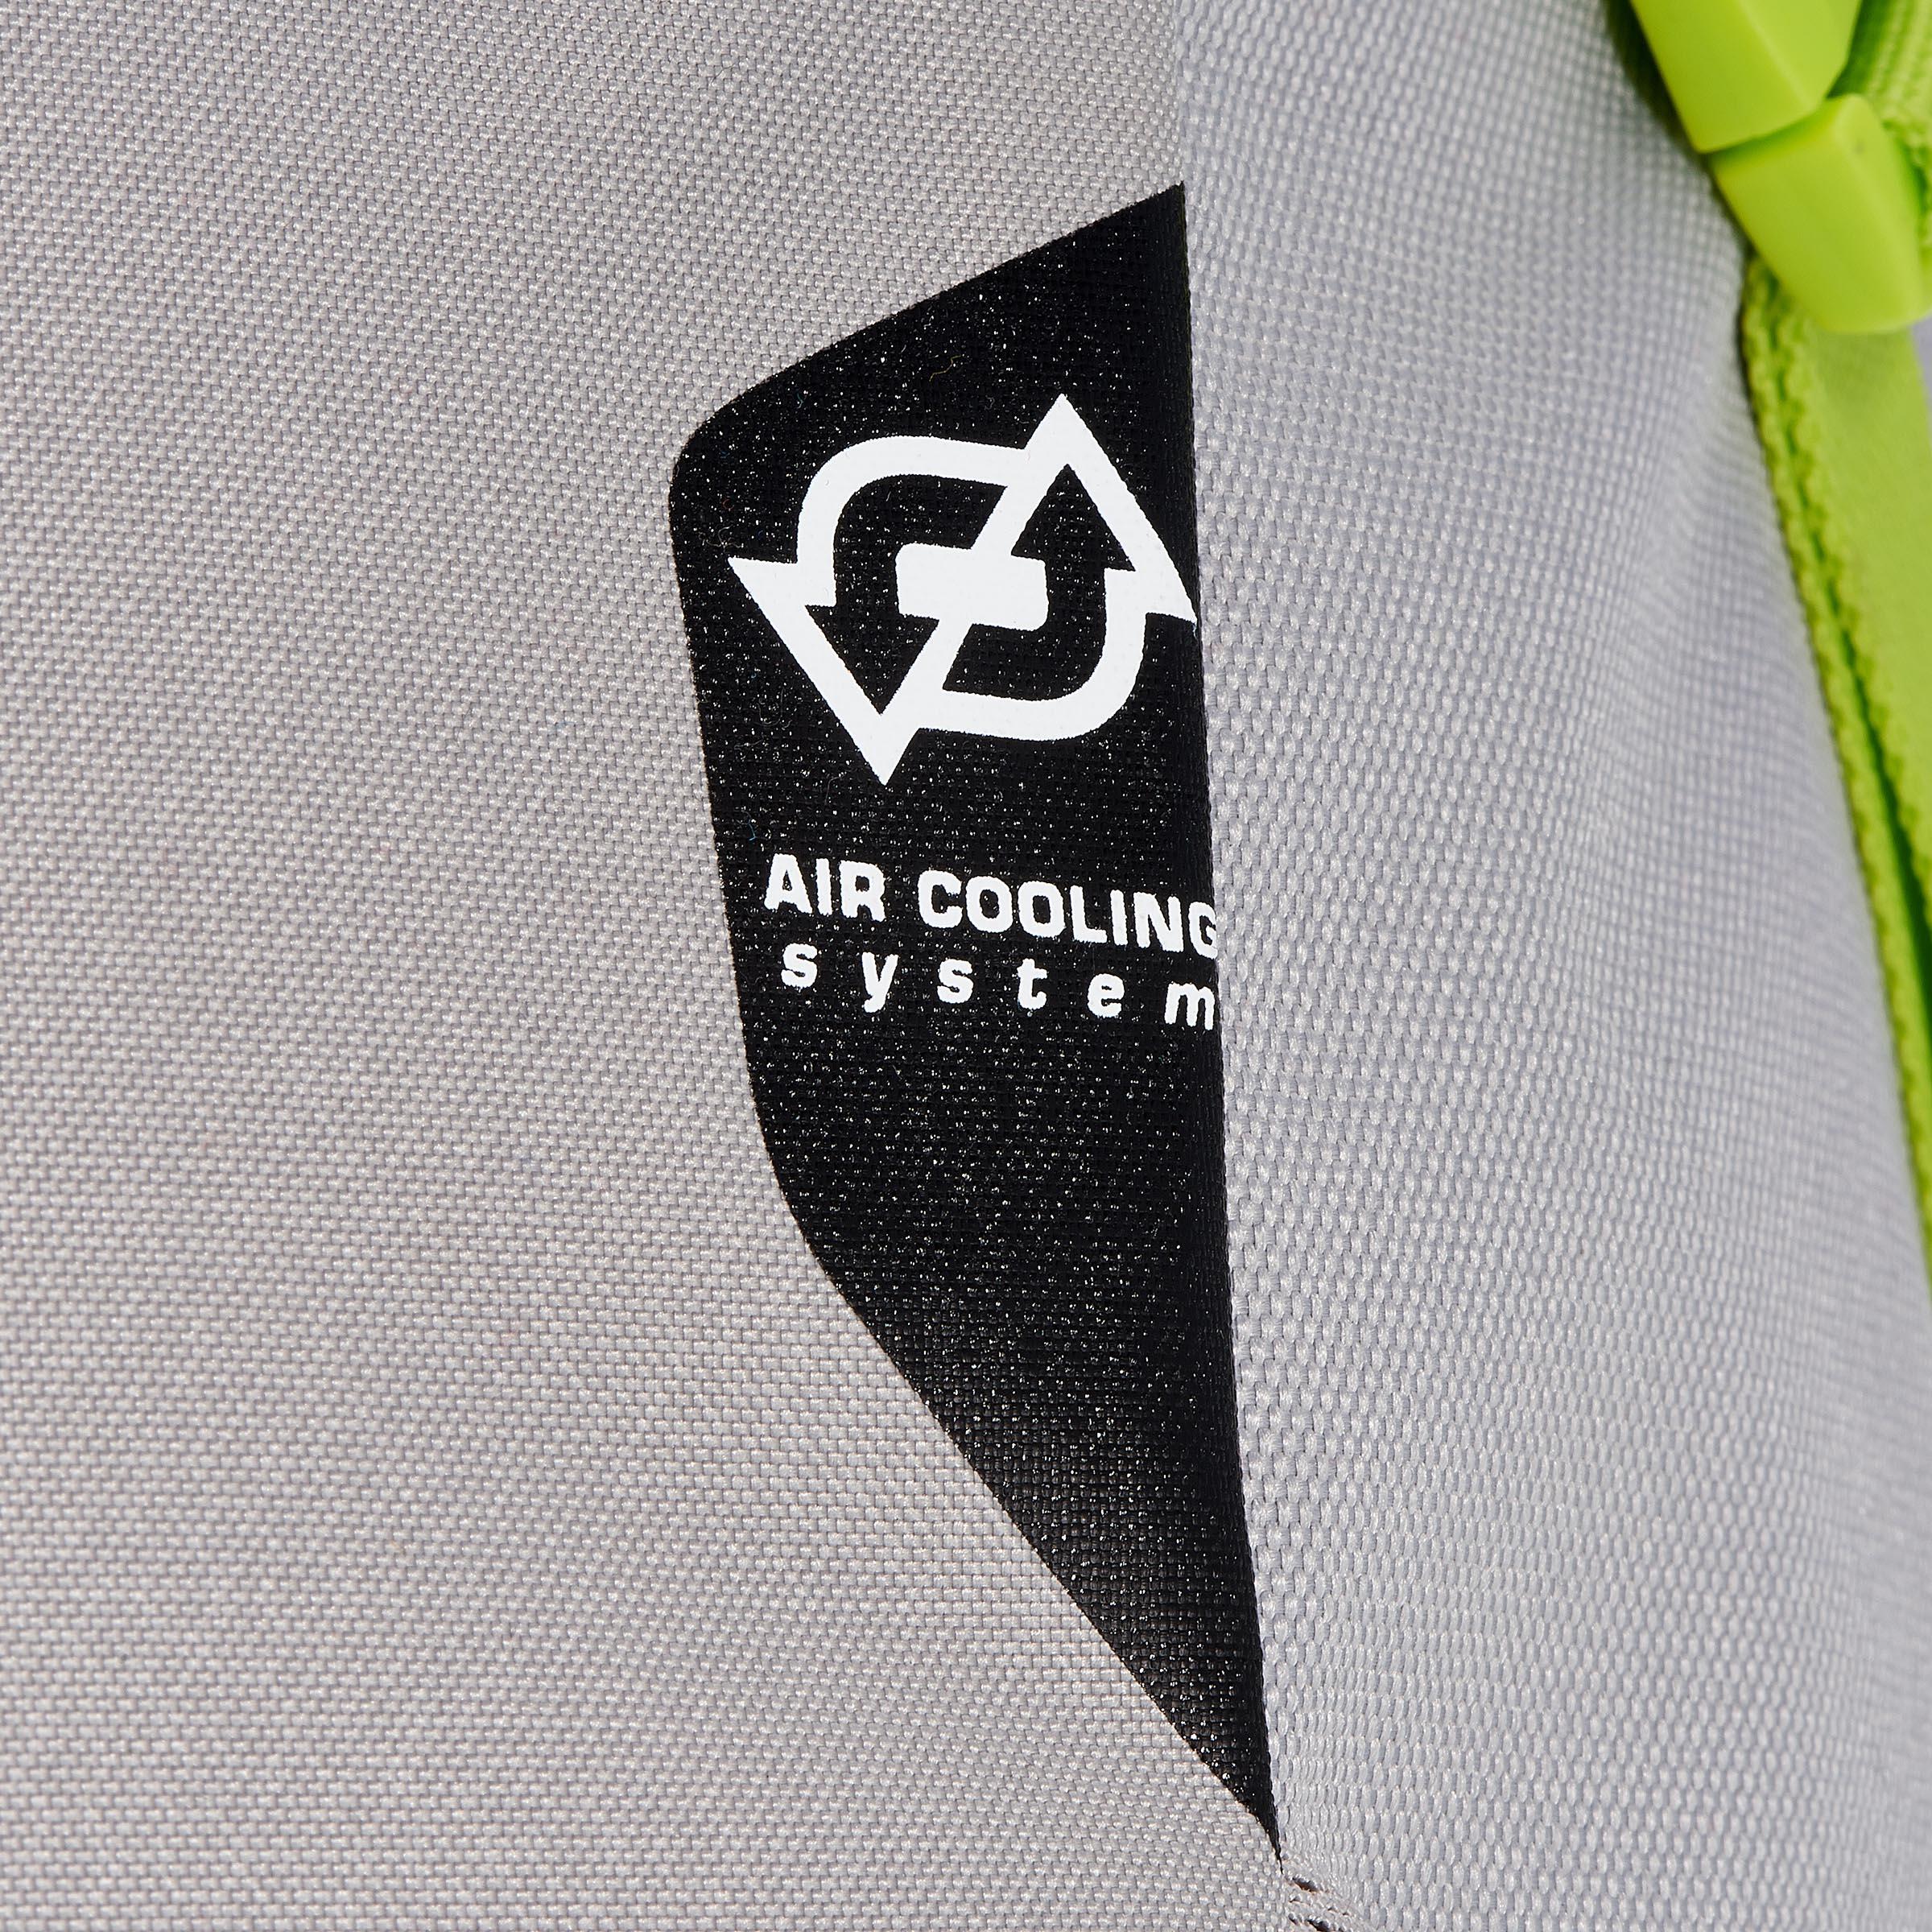 FORCLAZ 40 AIR backpack BLUE: AIR COOLING Label - regulates back perspiration 8/19